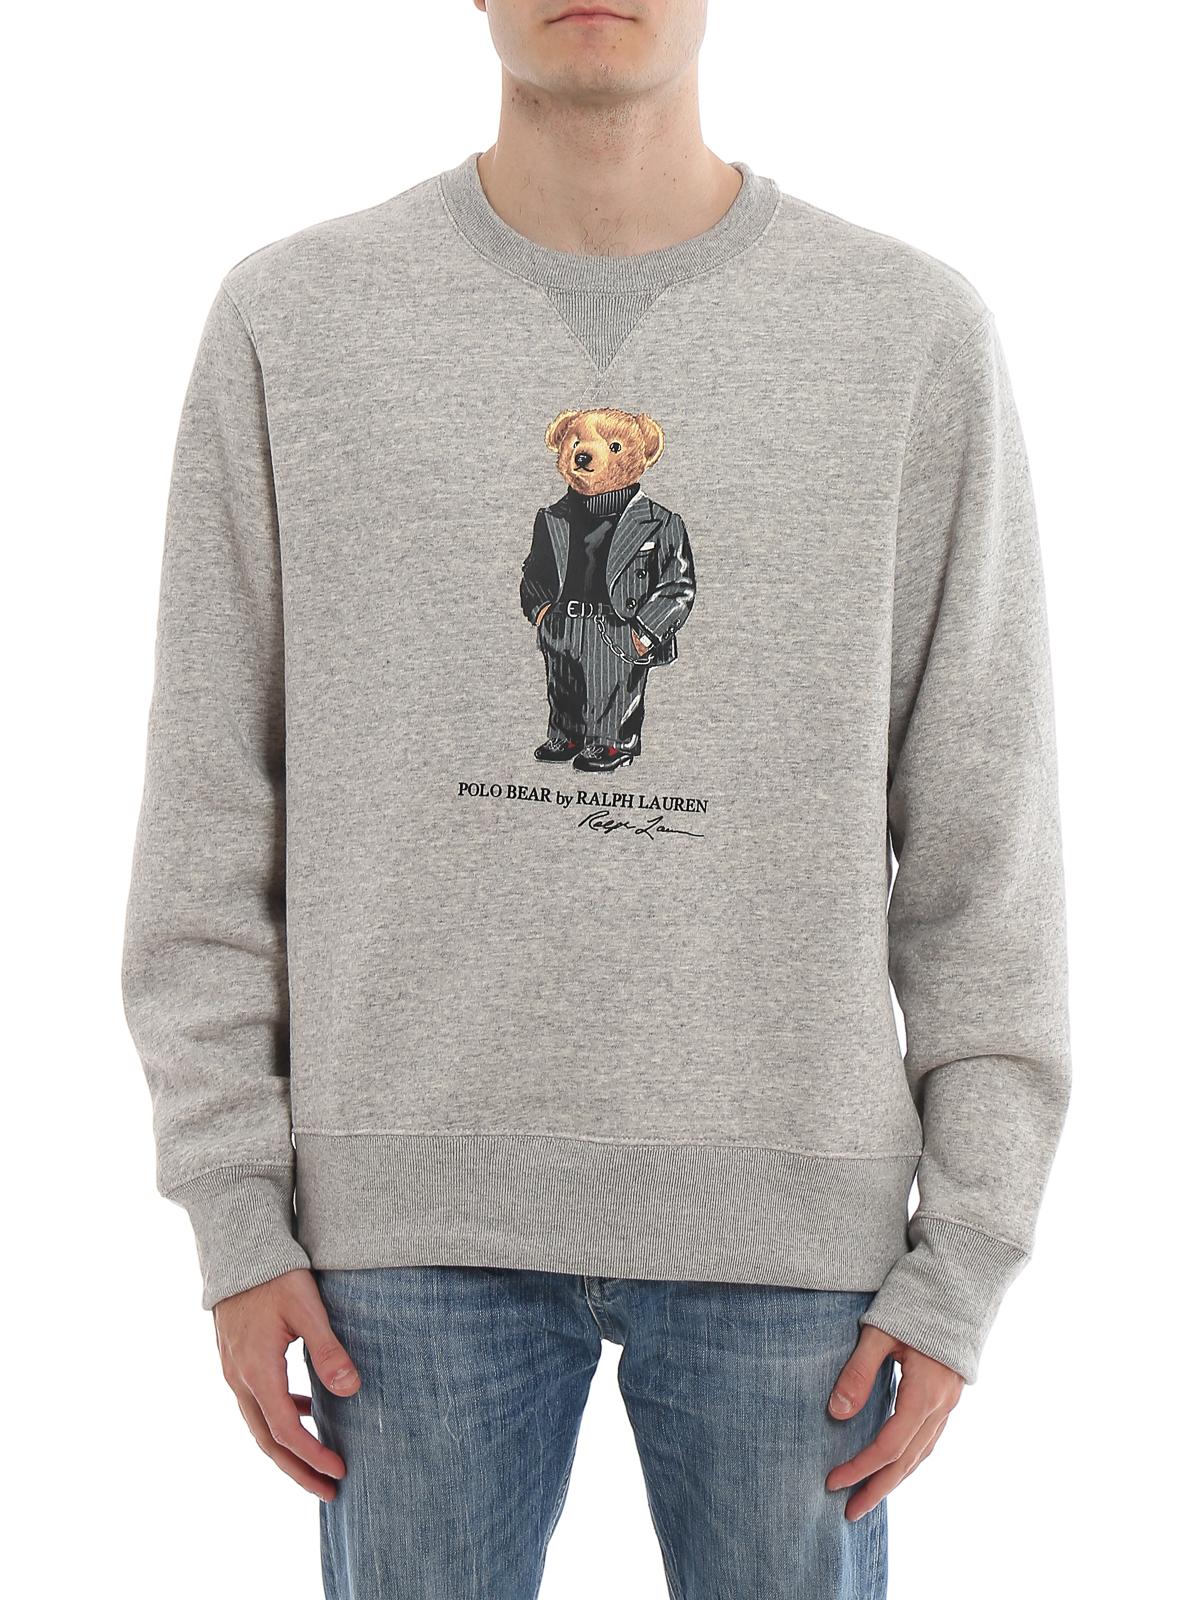 Crew necks Polo Ralph Lauren - Polo Bear fleece cotton sweatshirt -  710766808002